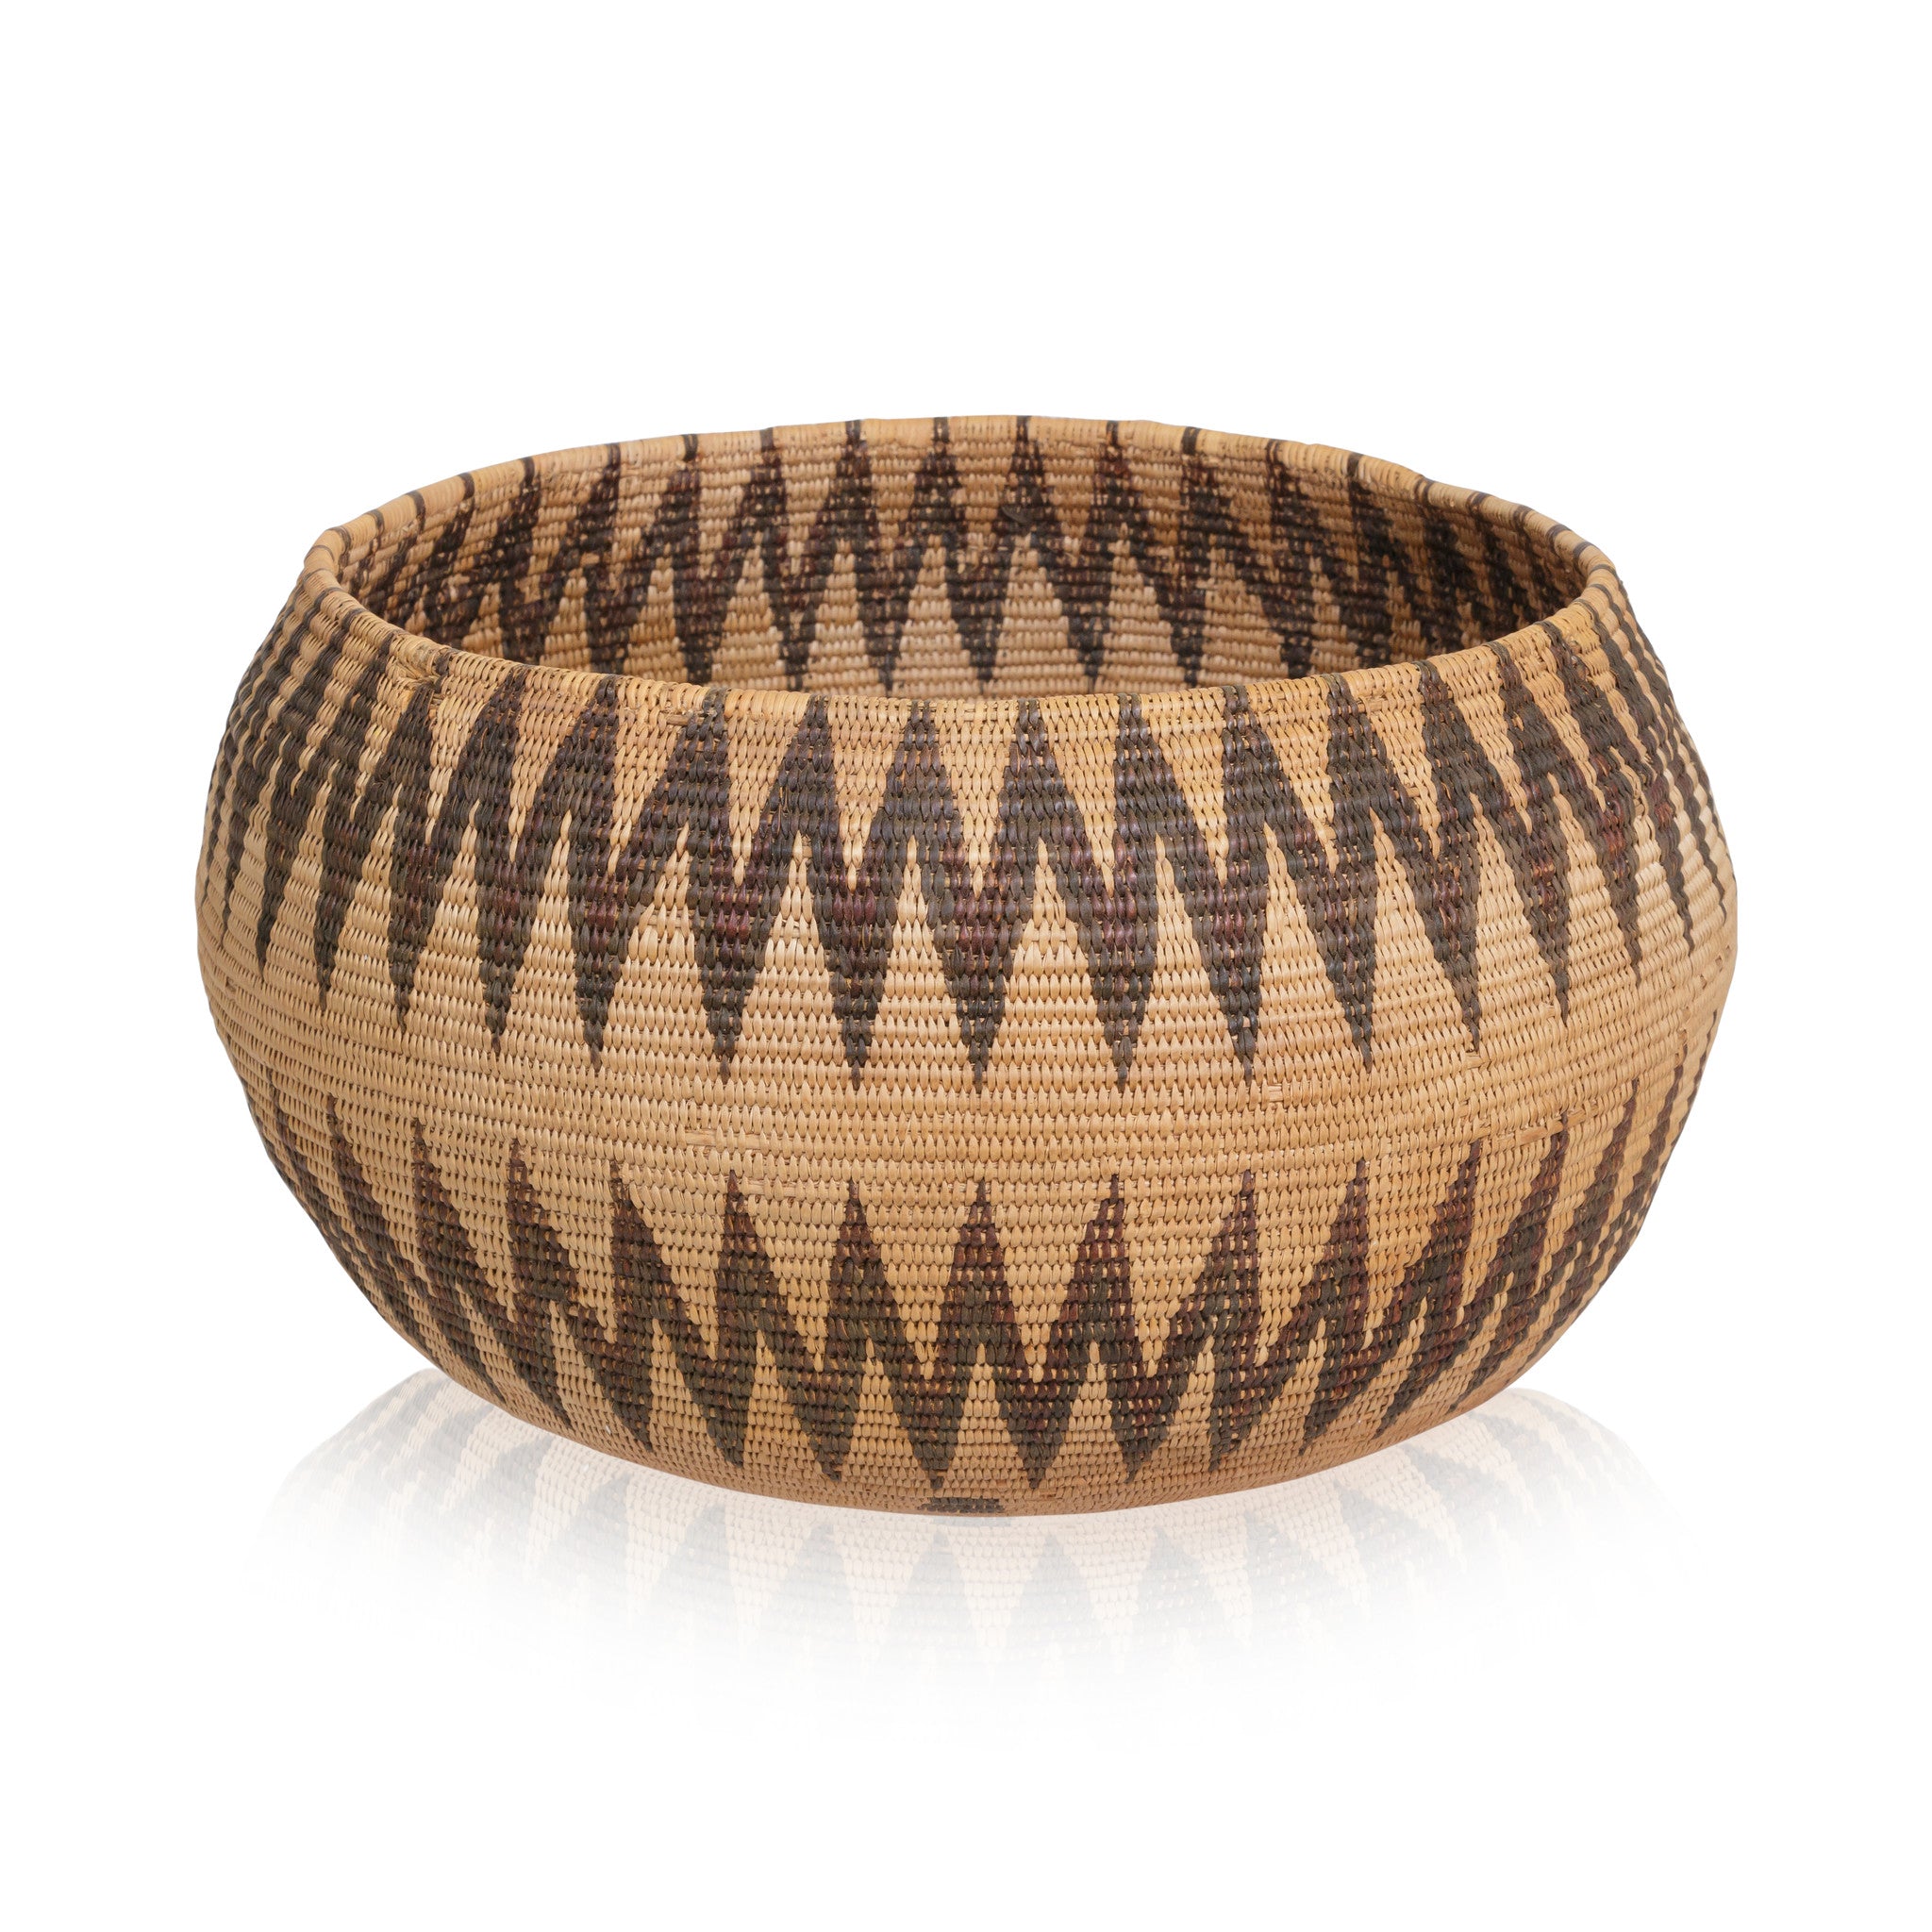 Washoe Basket, Native, Basketry, Vertical